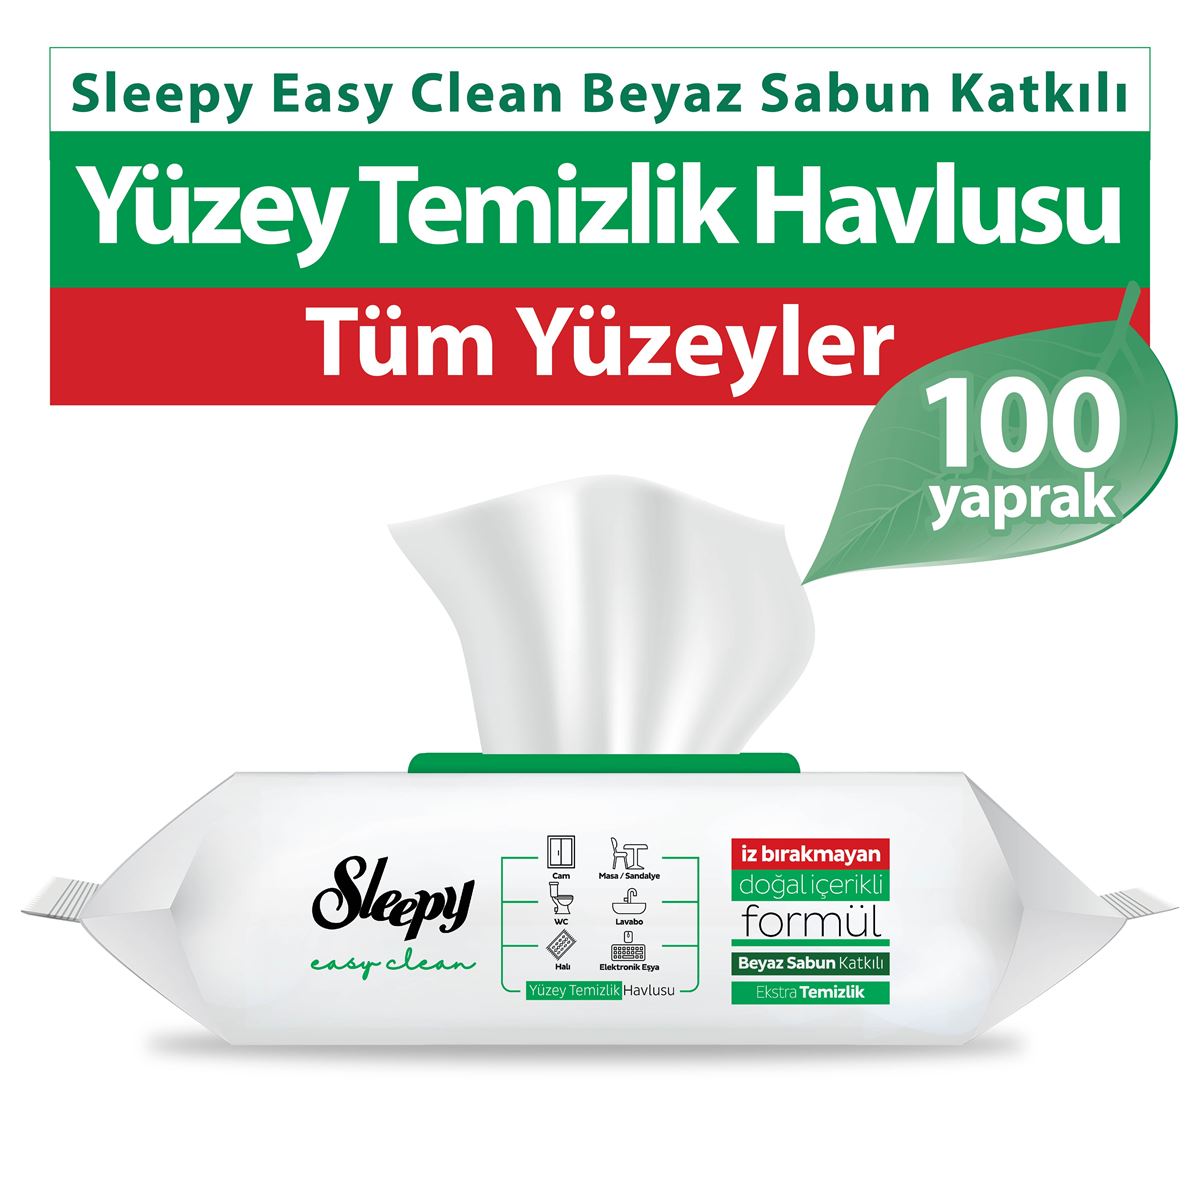 Sleepy Easy Clean Beyaz Sabun Katkılı Yüzey Temizlik Havlusu 100 Yaprak